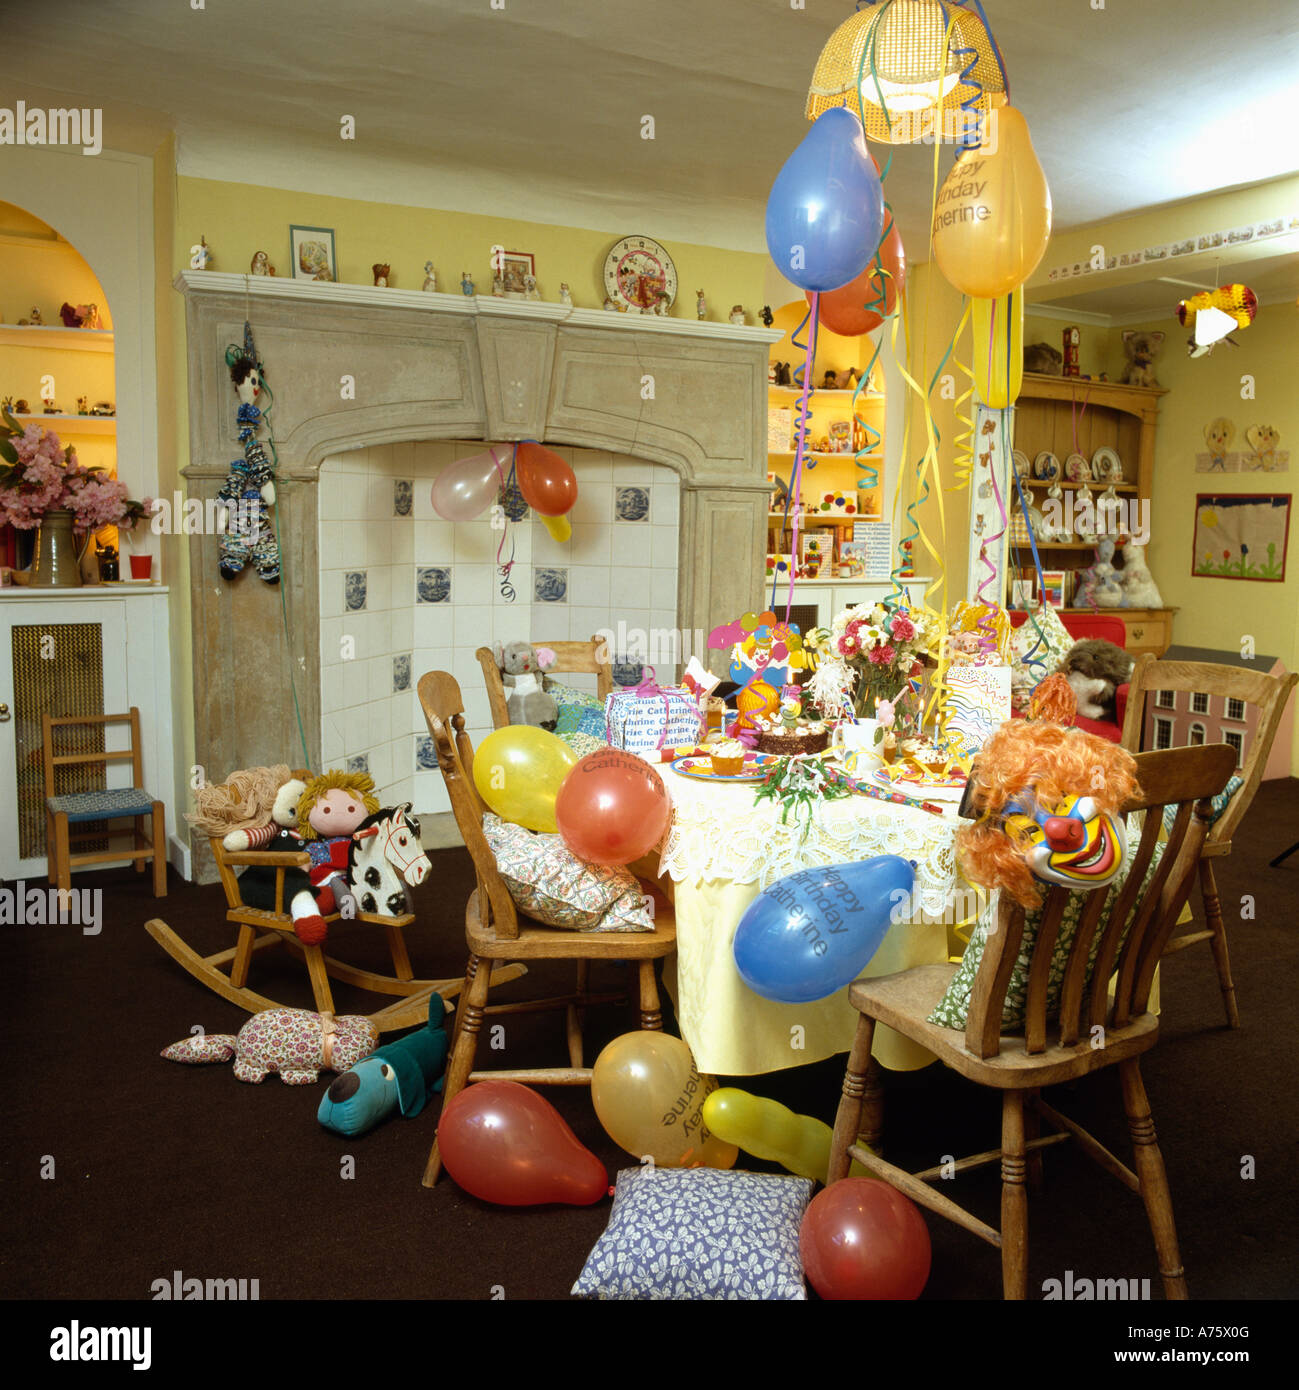 Comedor con globos de colores y tabla para fiesta infantil, Foto de stock